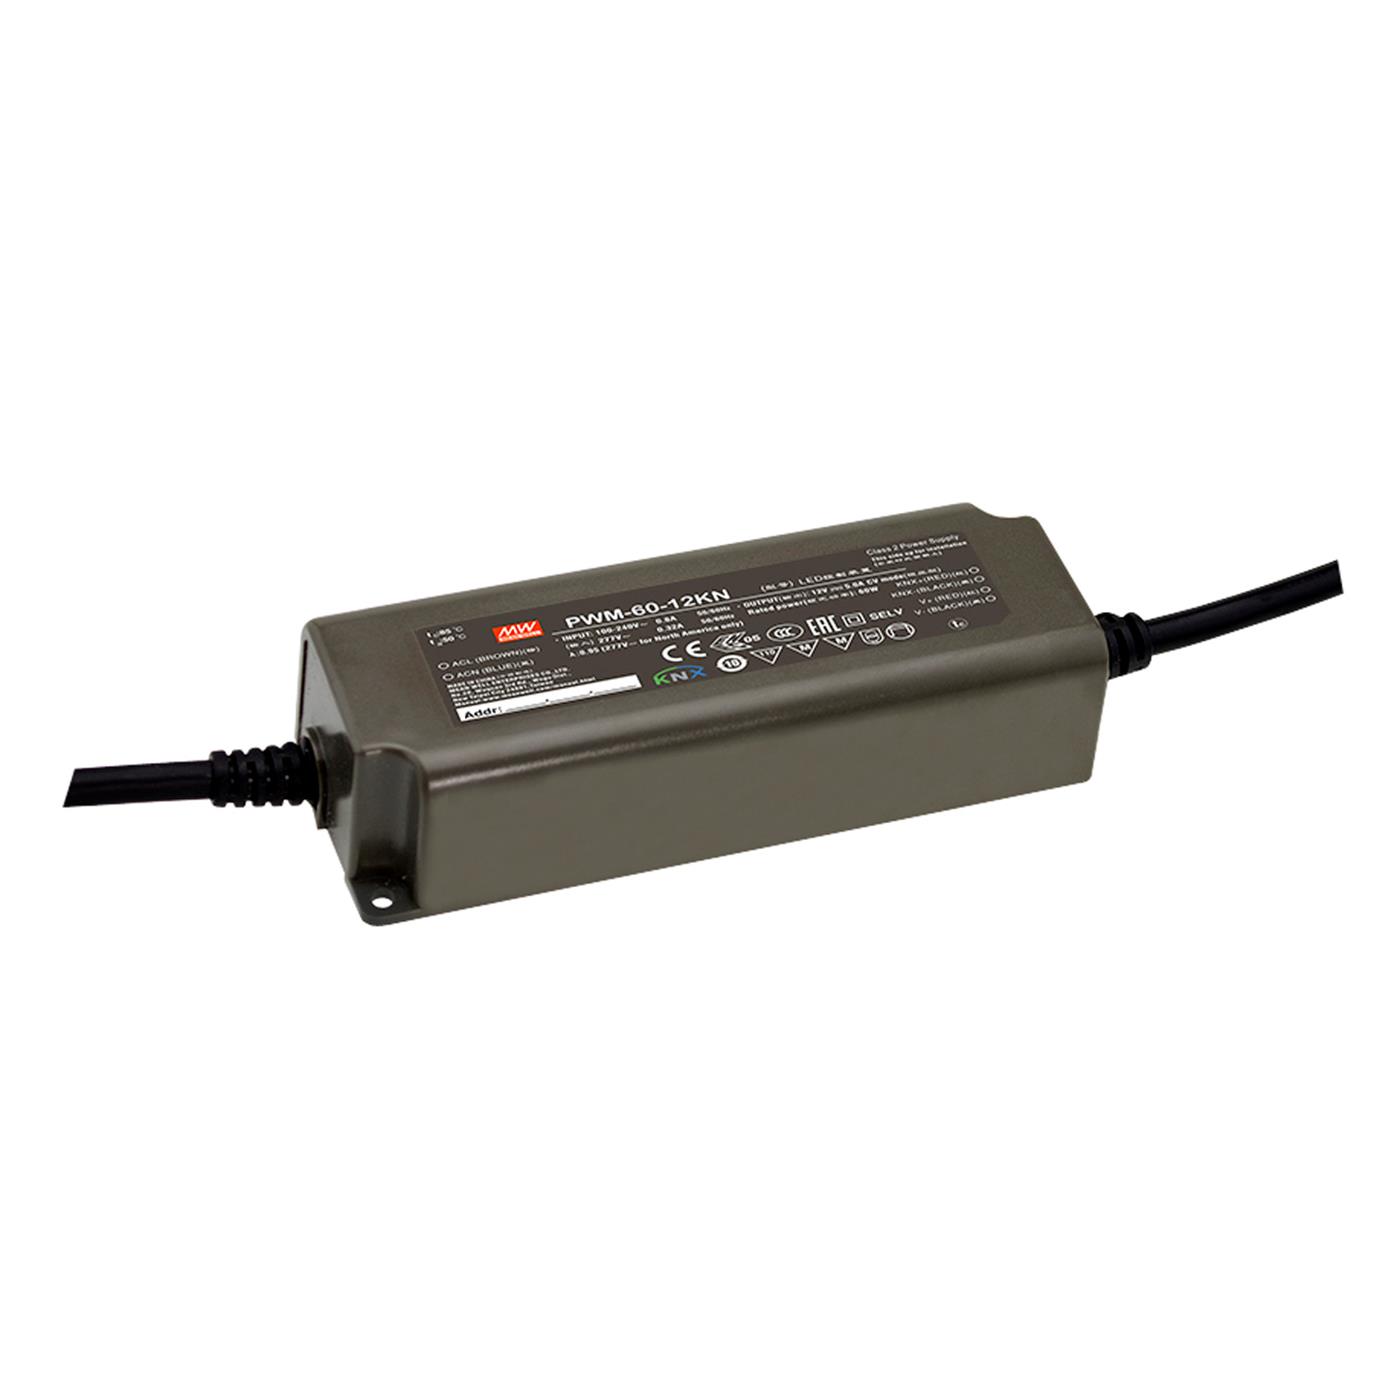 PWM-60-12KN 60W 12V 5A LED Netzteil Trafo Treiber IP65 Dimmbar KNX PWM